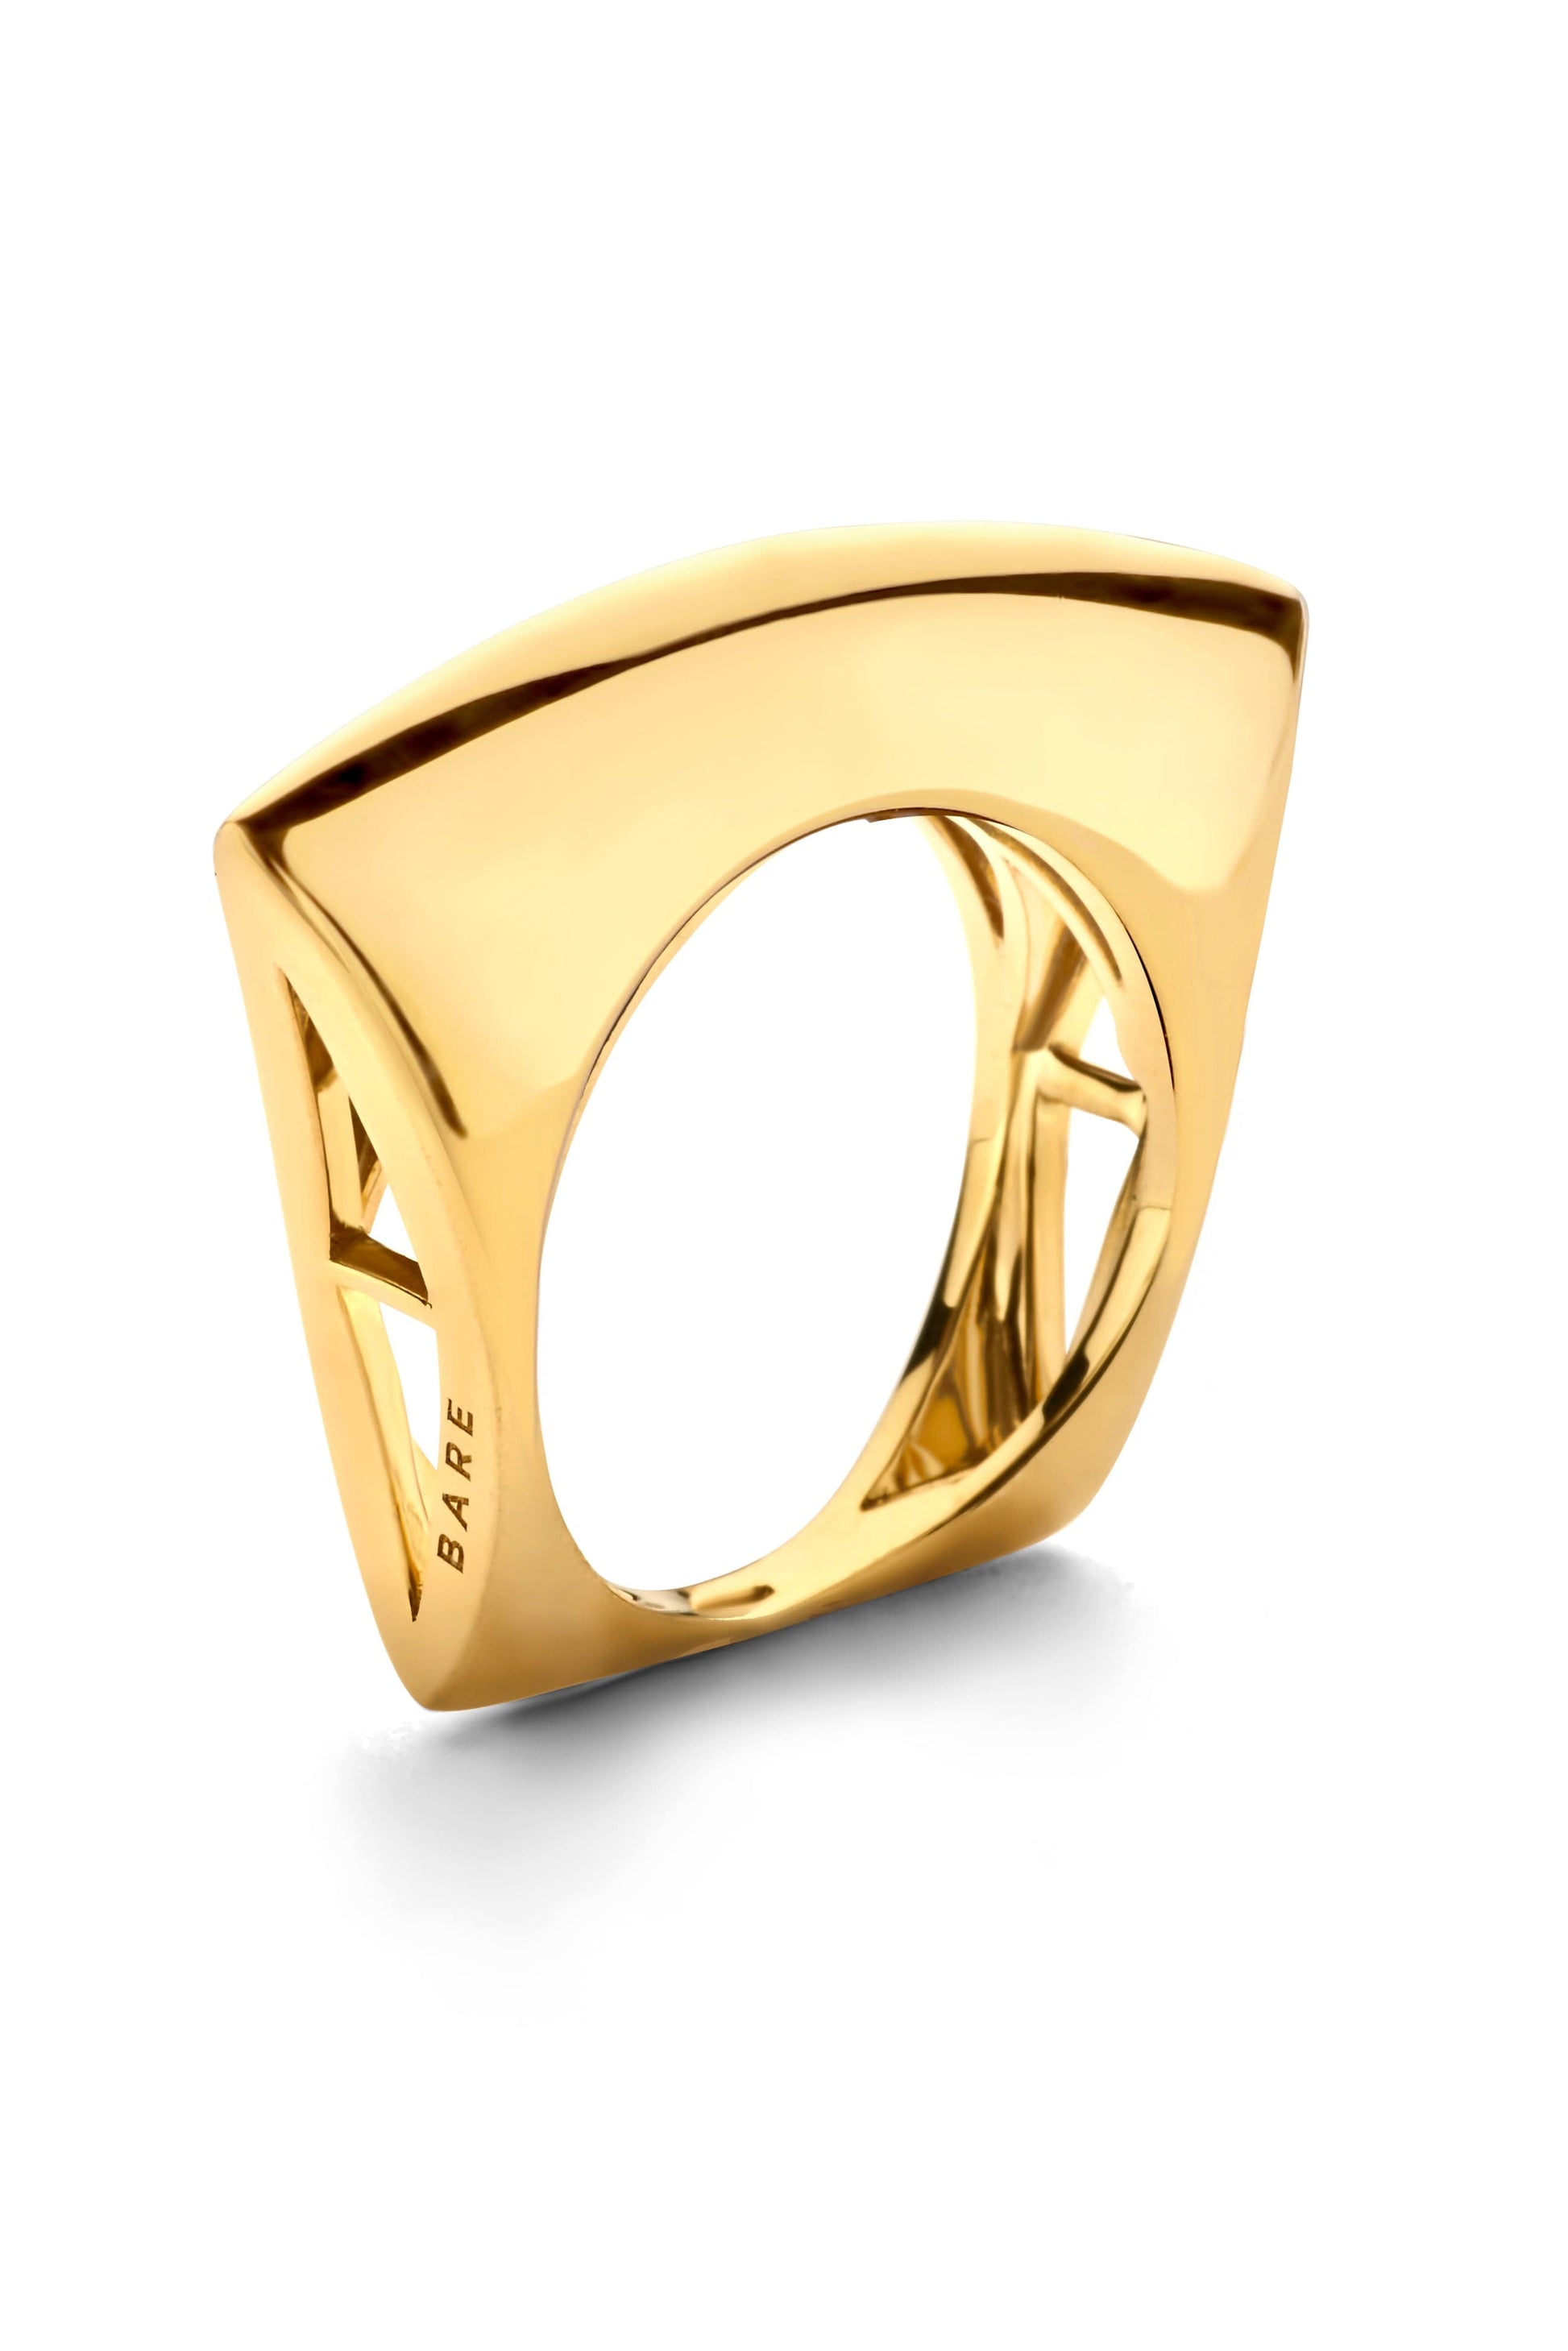 DRIES CRIEL-Lotus Ring-YELLOW GOLD